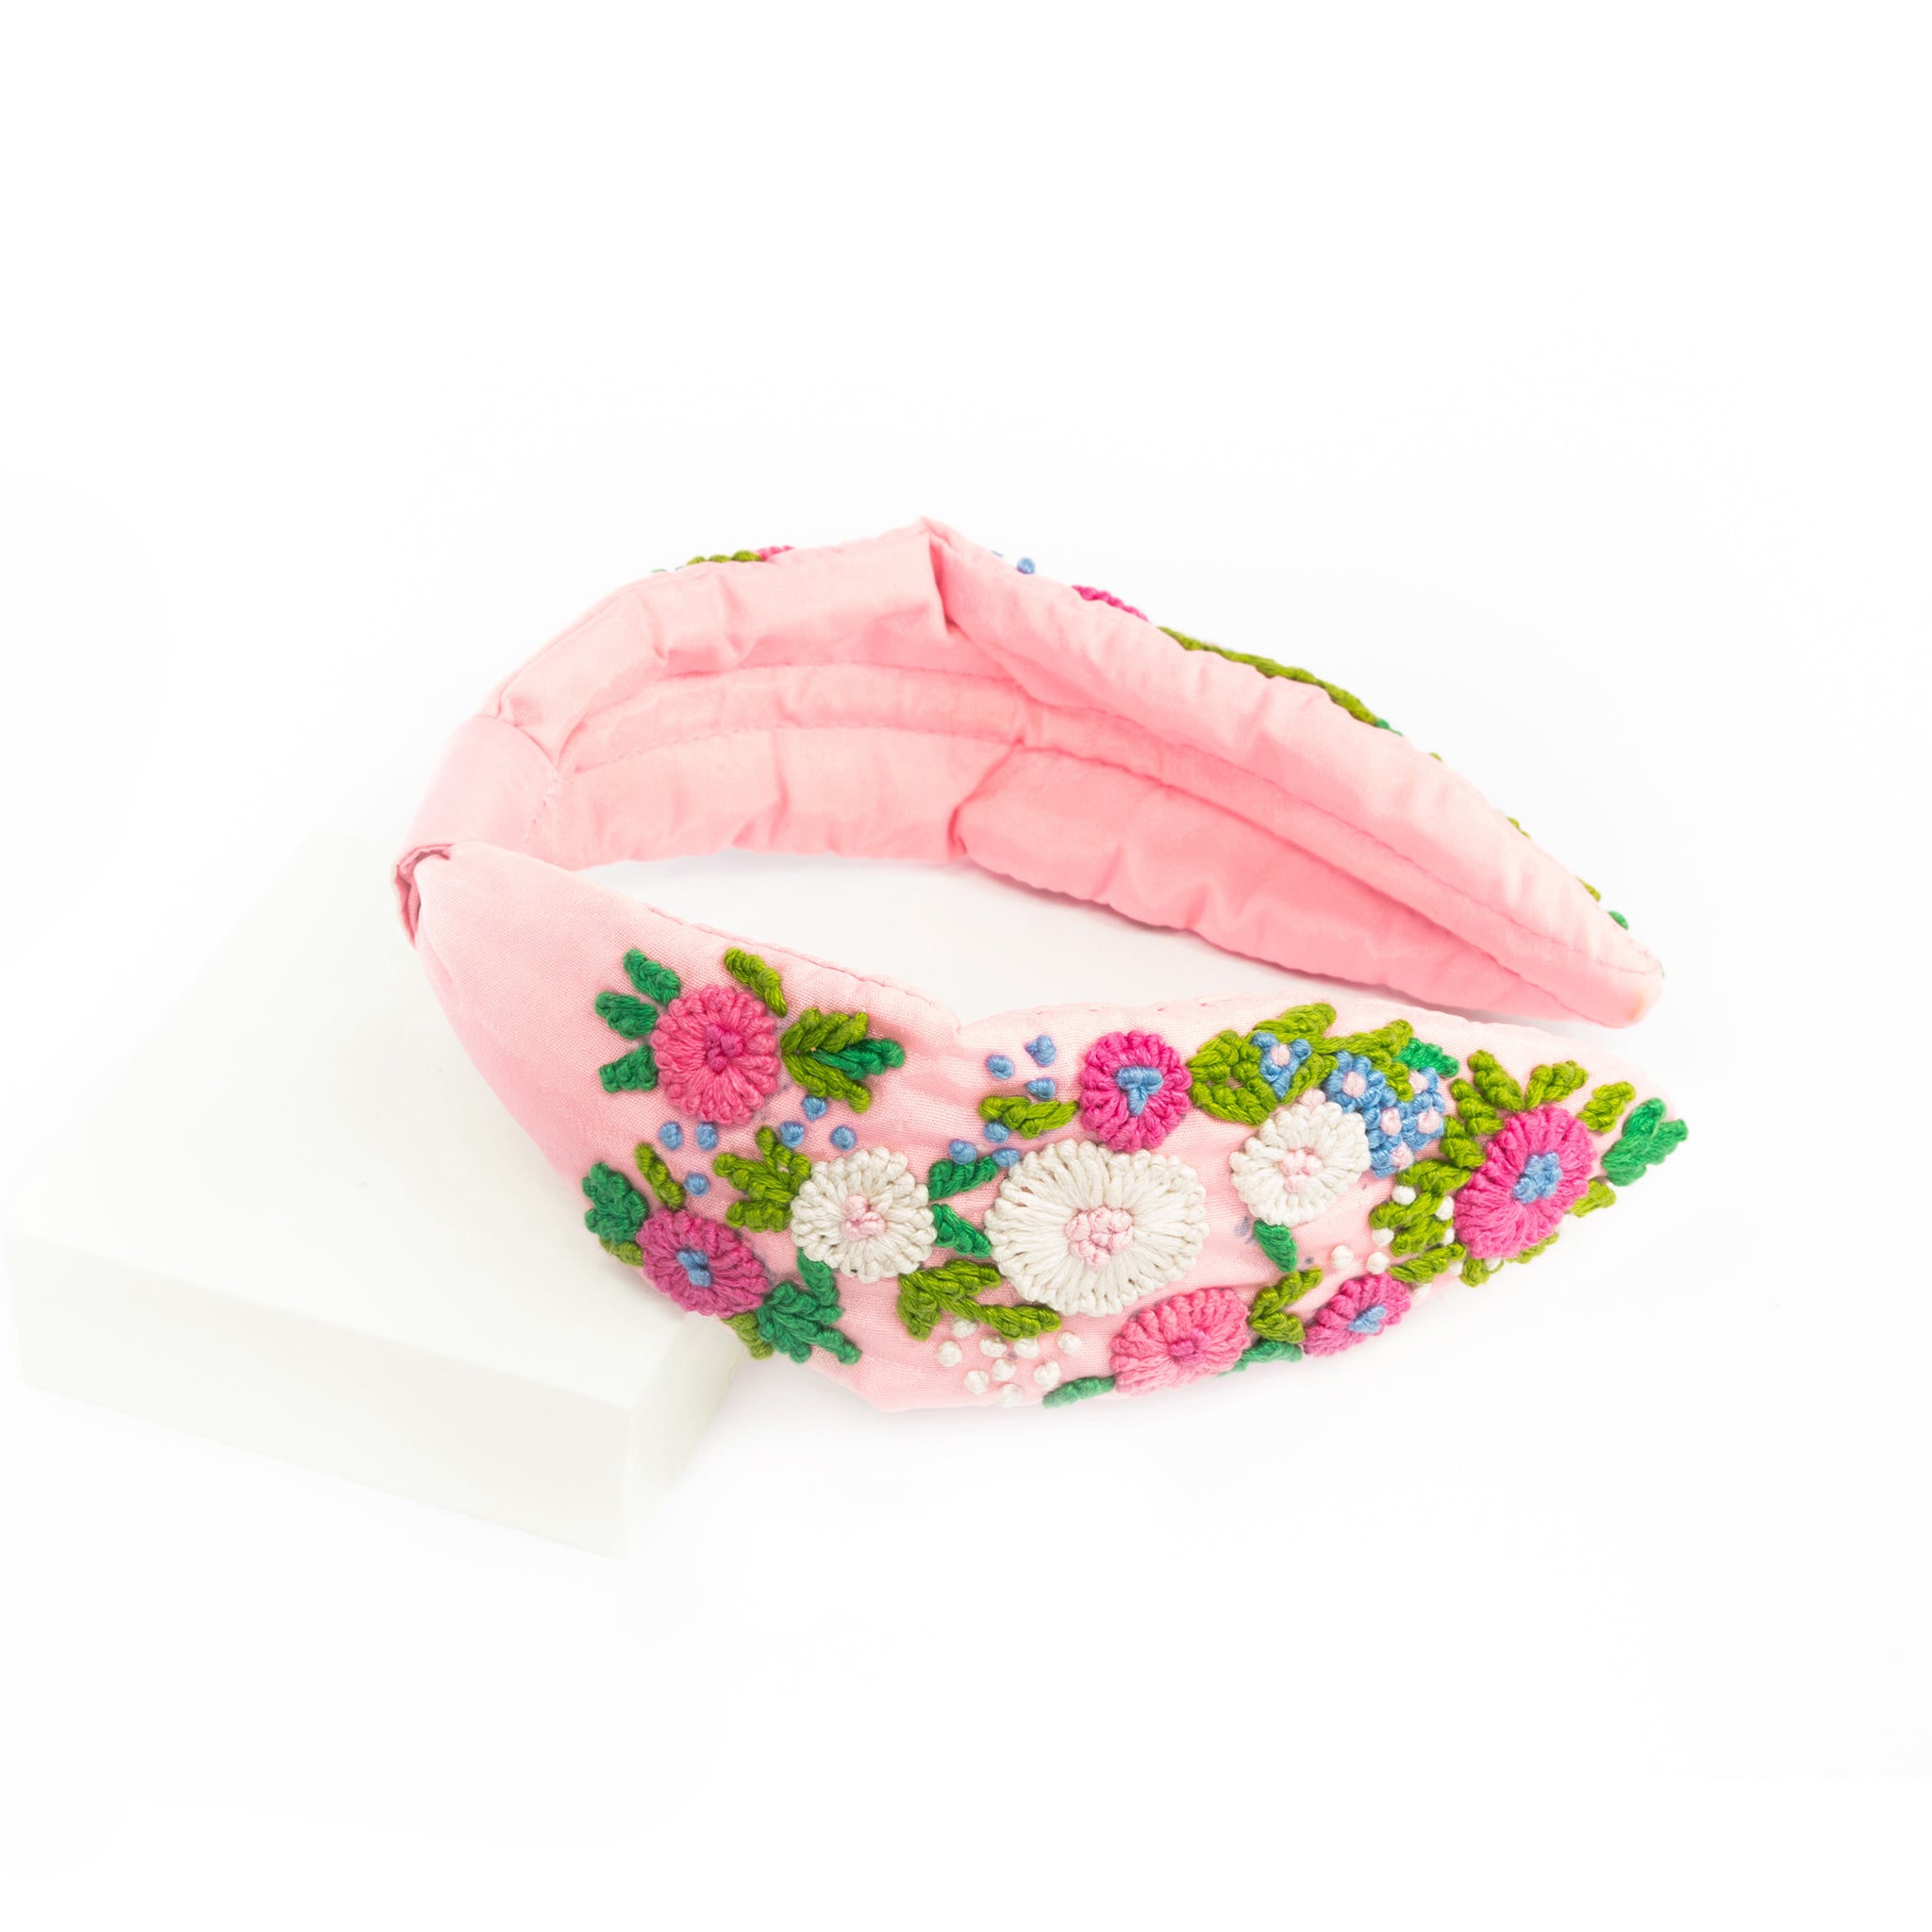 Embroidered Headband in Pink Flower Garden